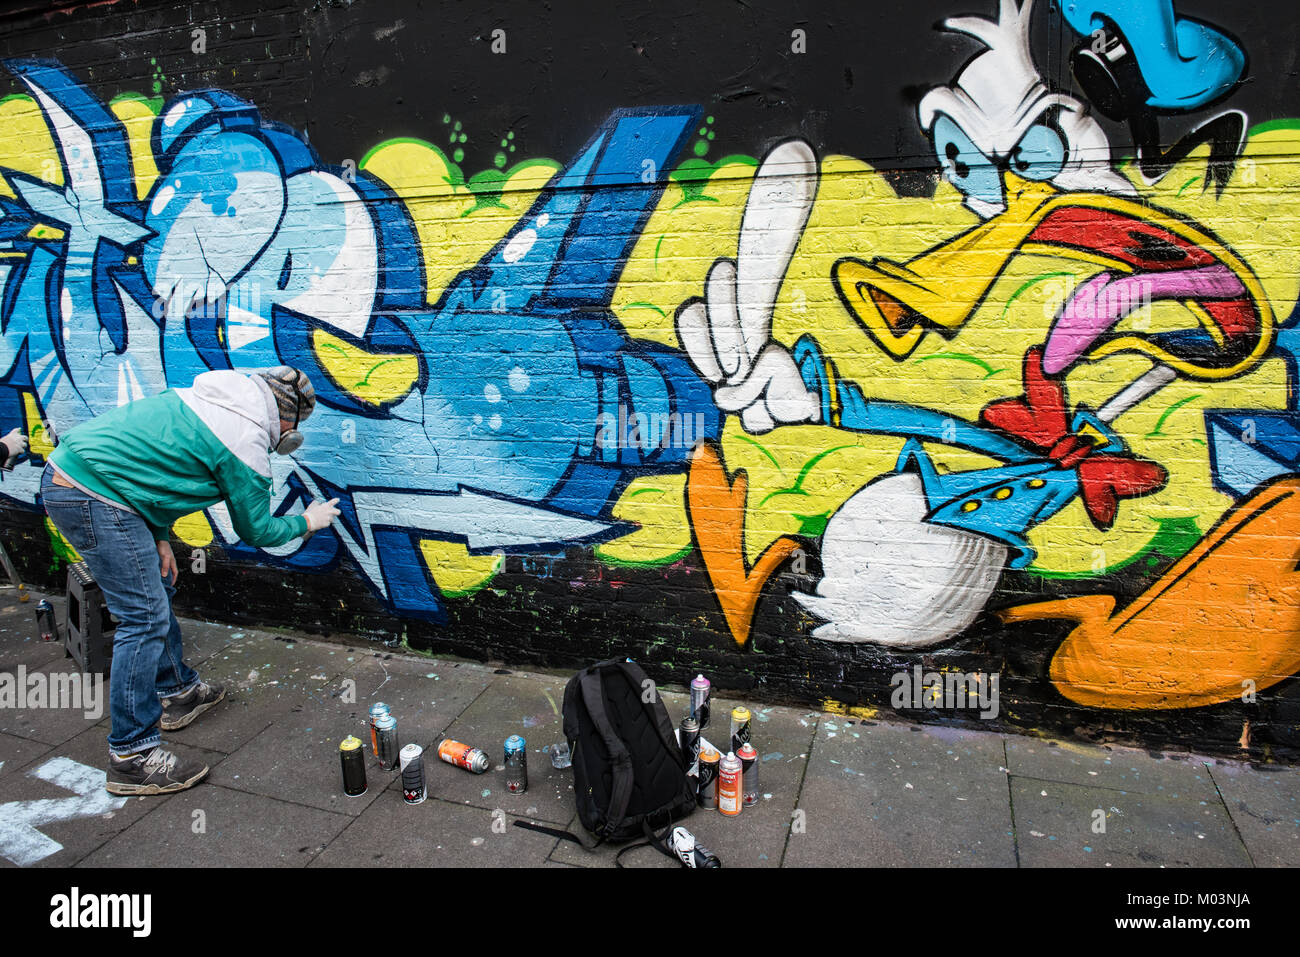 Brick Lane, East London ist eine kreative Zone für Künstler. Diese Bilder records Graffiti Künstler, beendet ein Stück Kunst. Stockfoto